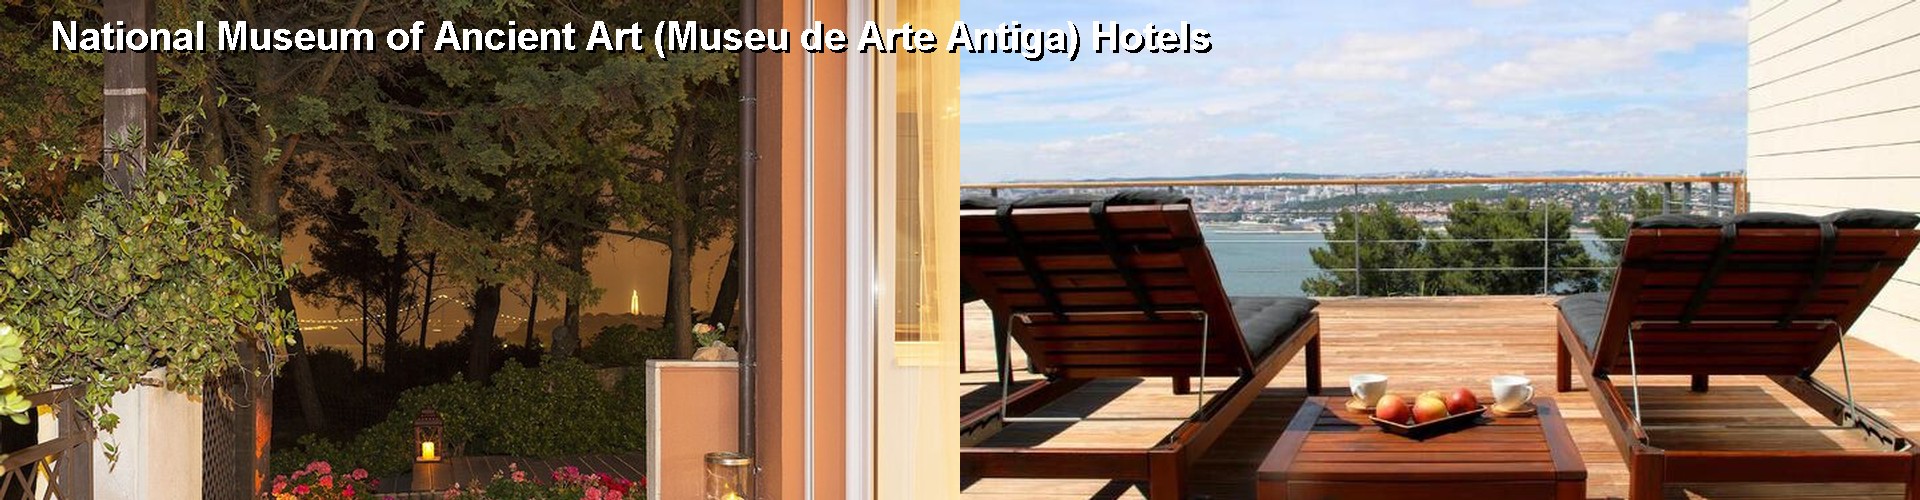 5 Best Hotels near National Museum of Ancient Art (Museu de Arte Antiga)